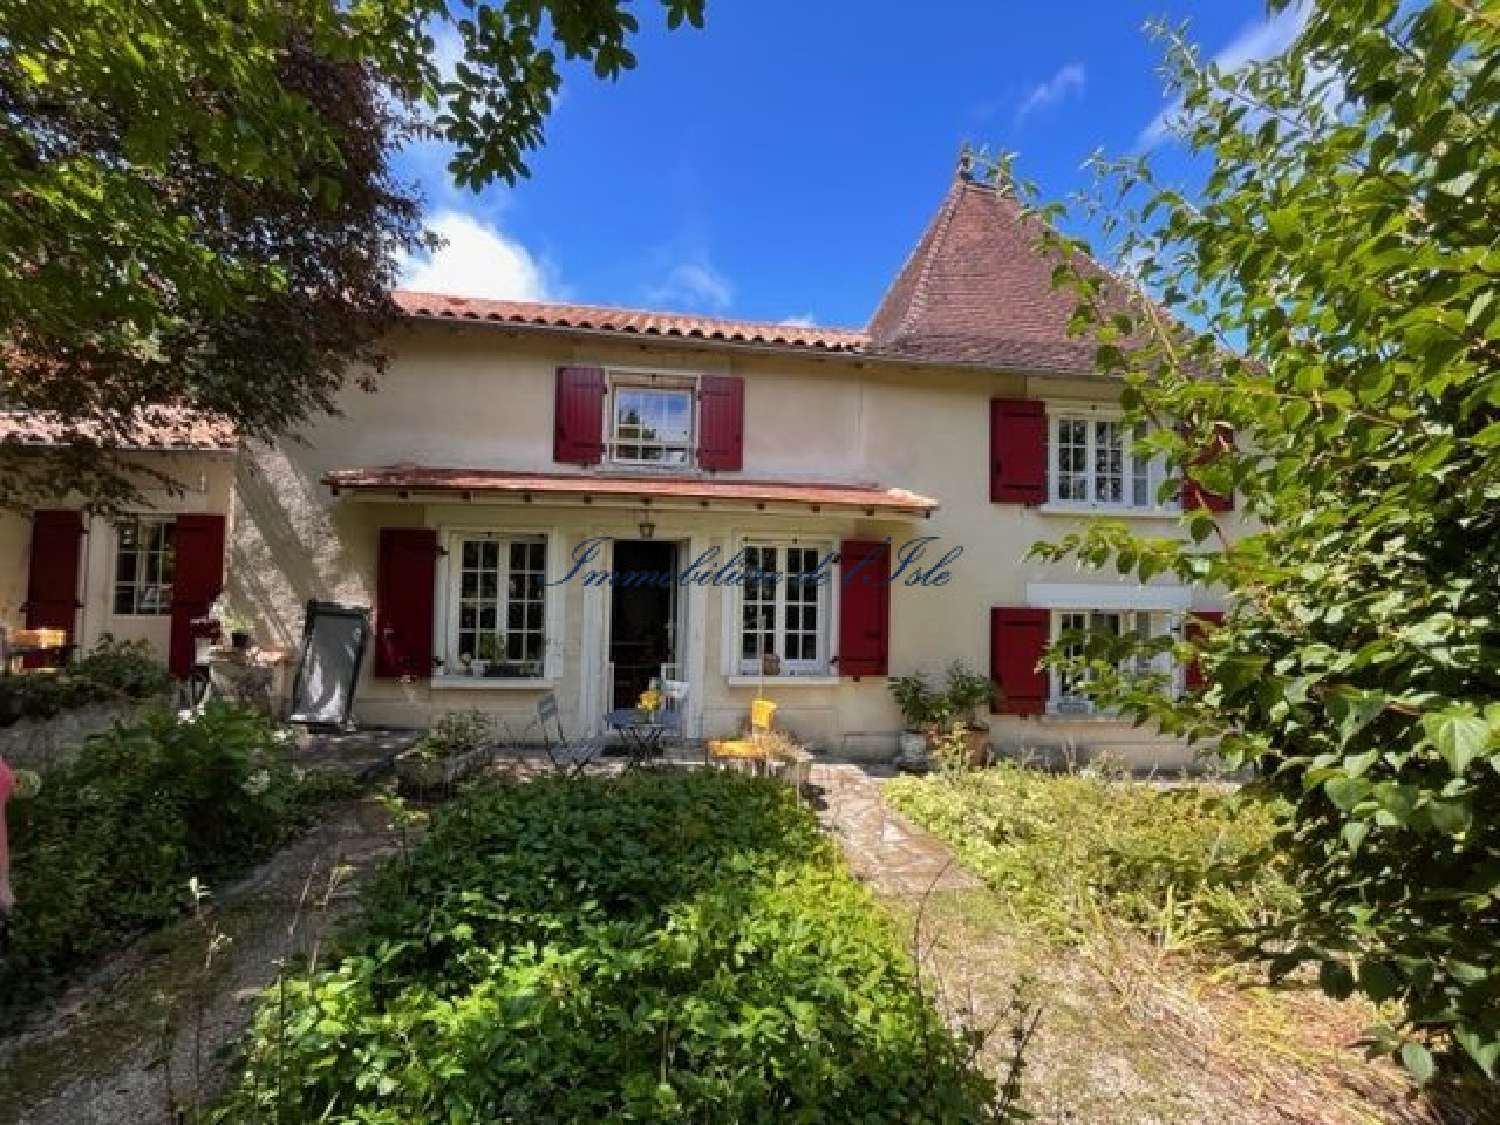  à vendre maison Verteillac Dordogne 1